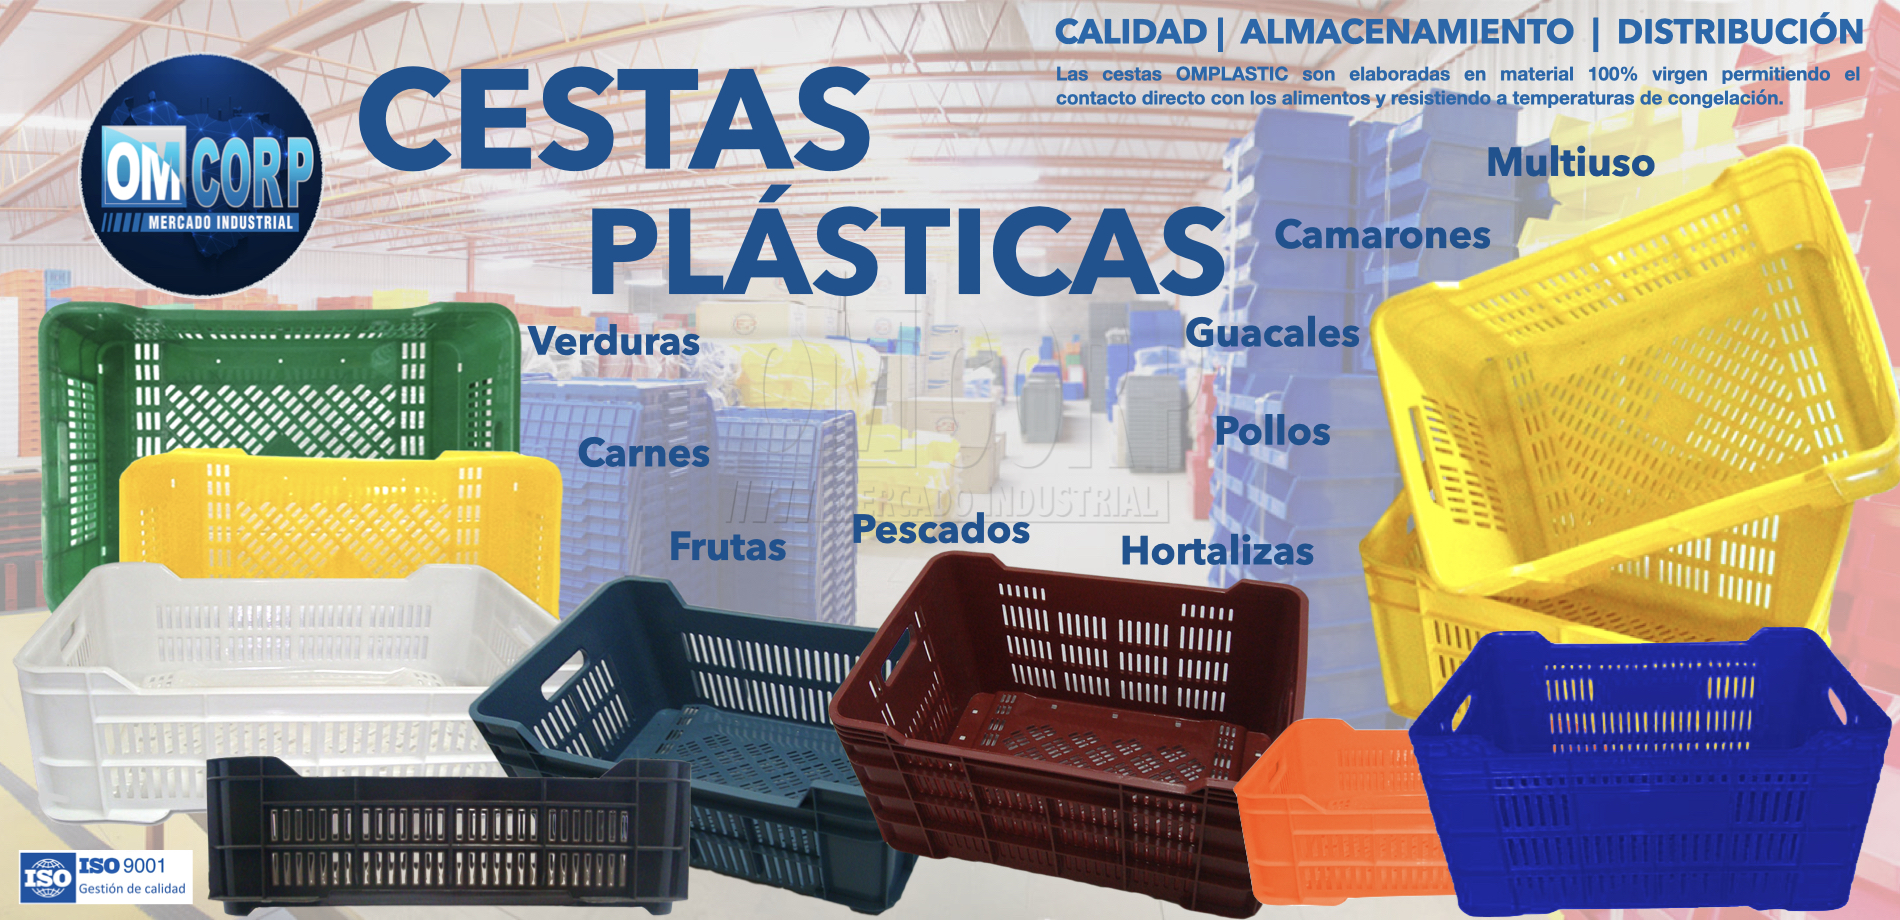 Fabrica Cestas Plasticas Venezuela